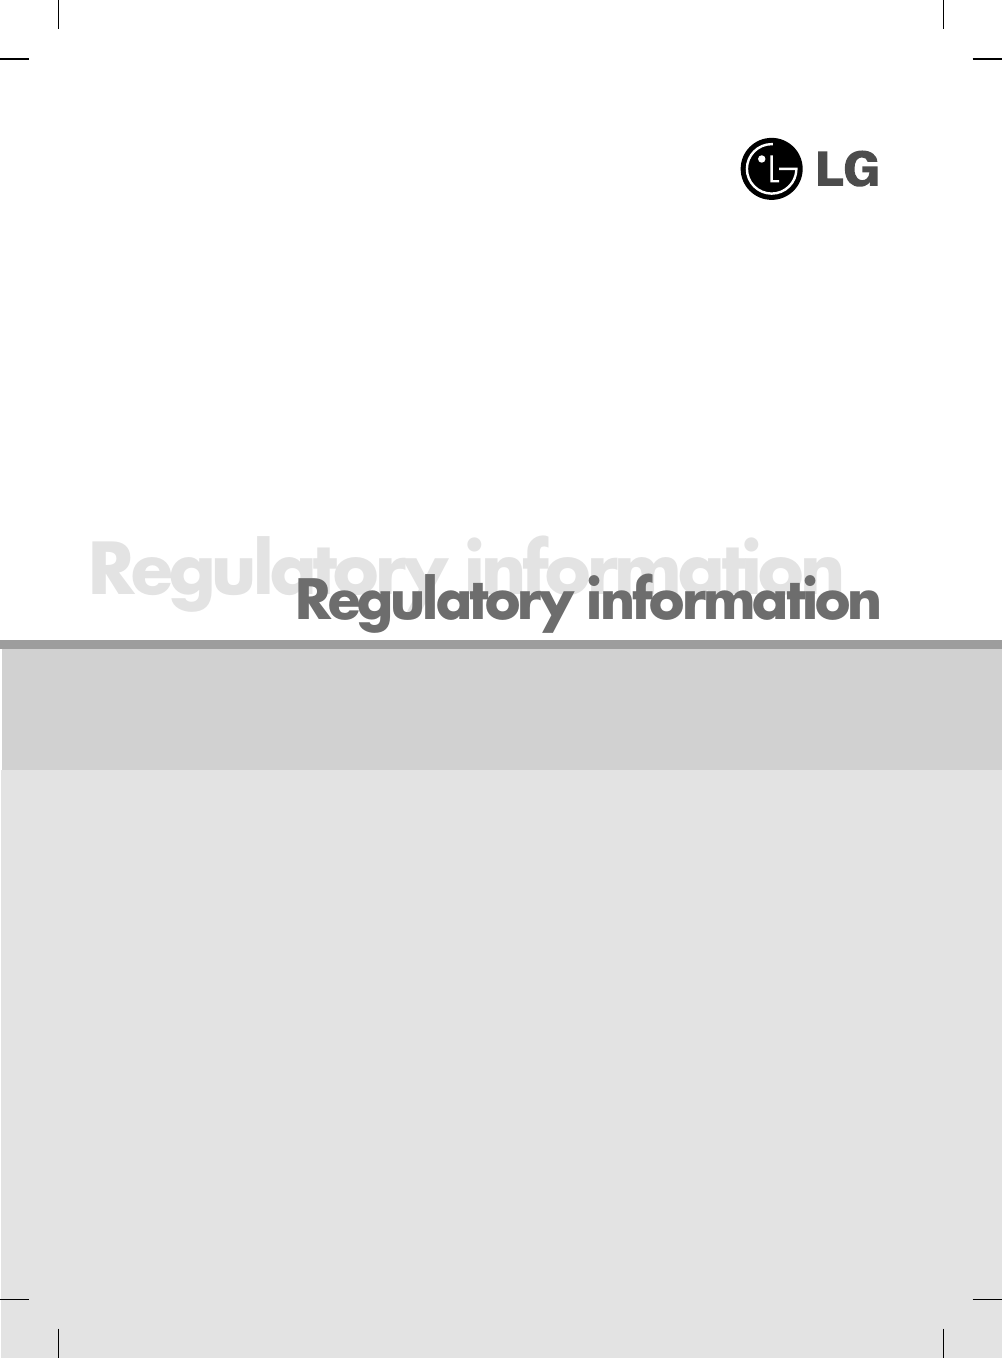 Regulatory informationRegulatory information